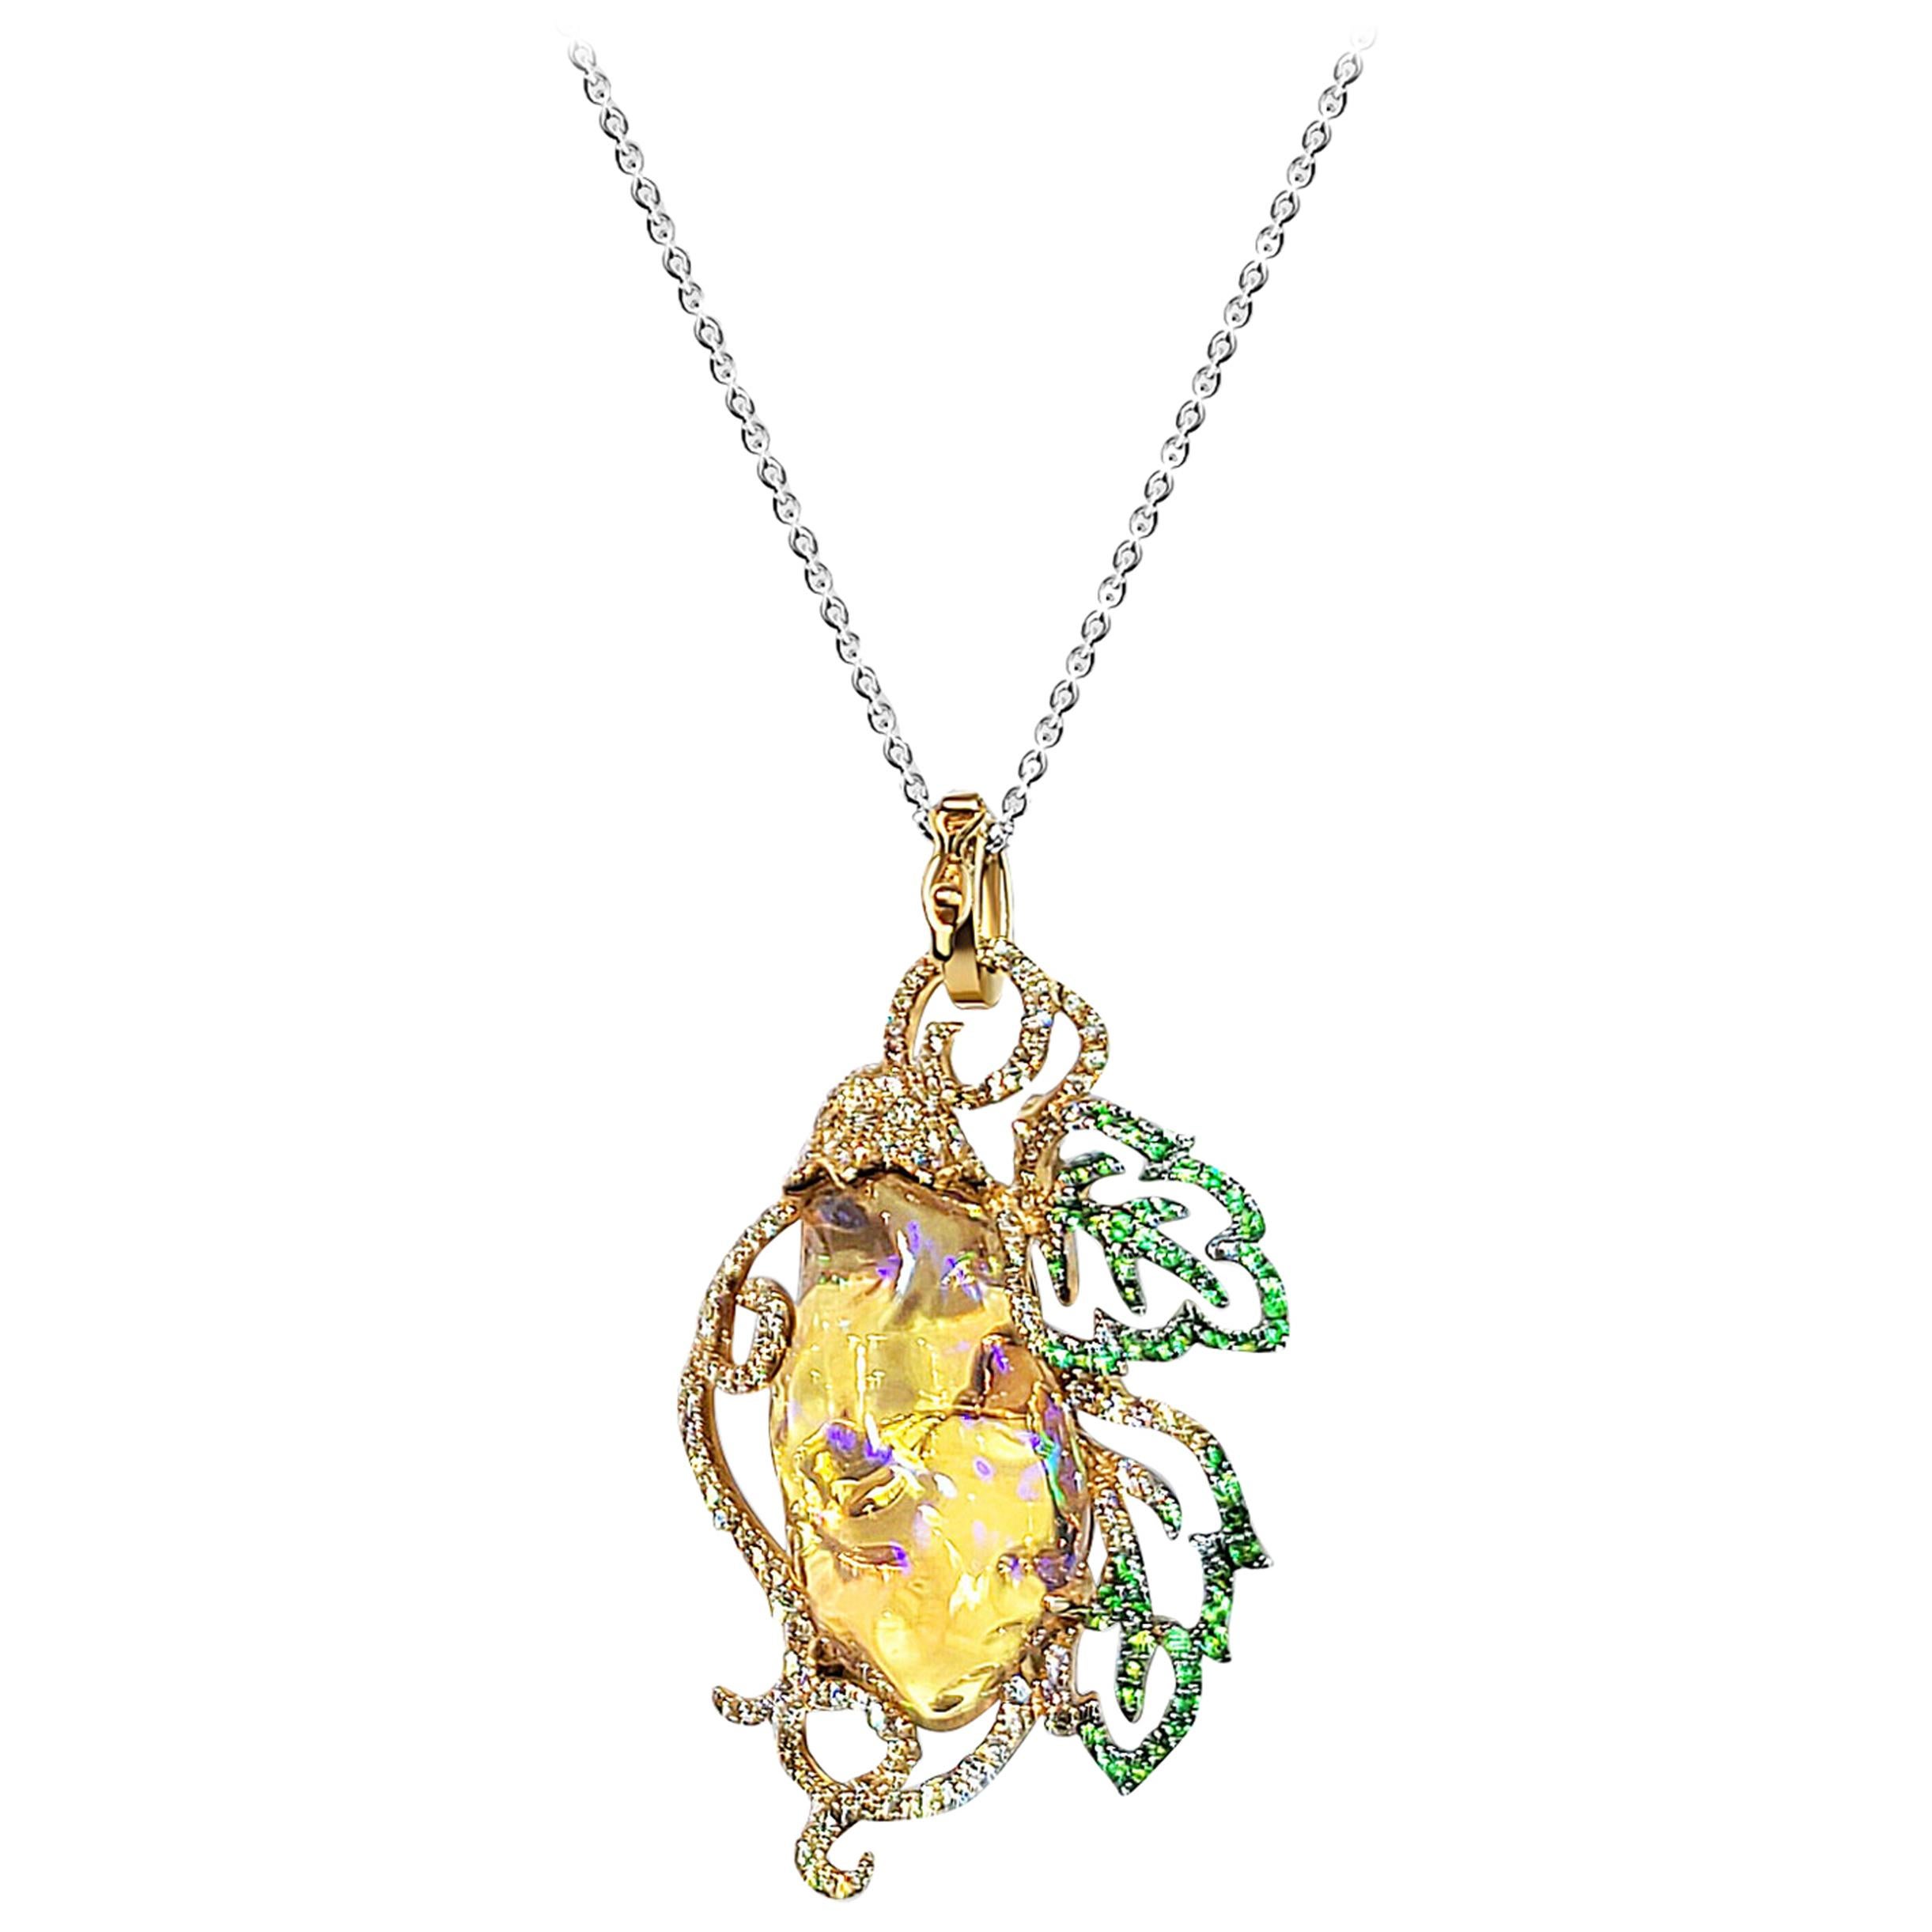 18 Karat Yellow Gold Fire Opal, Green Garnet and Diamond Pendant Brooch